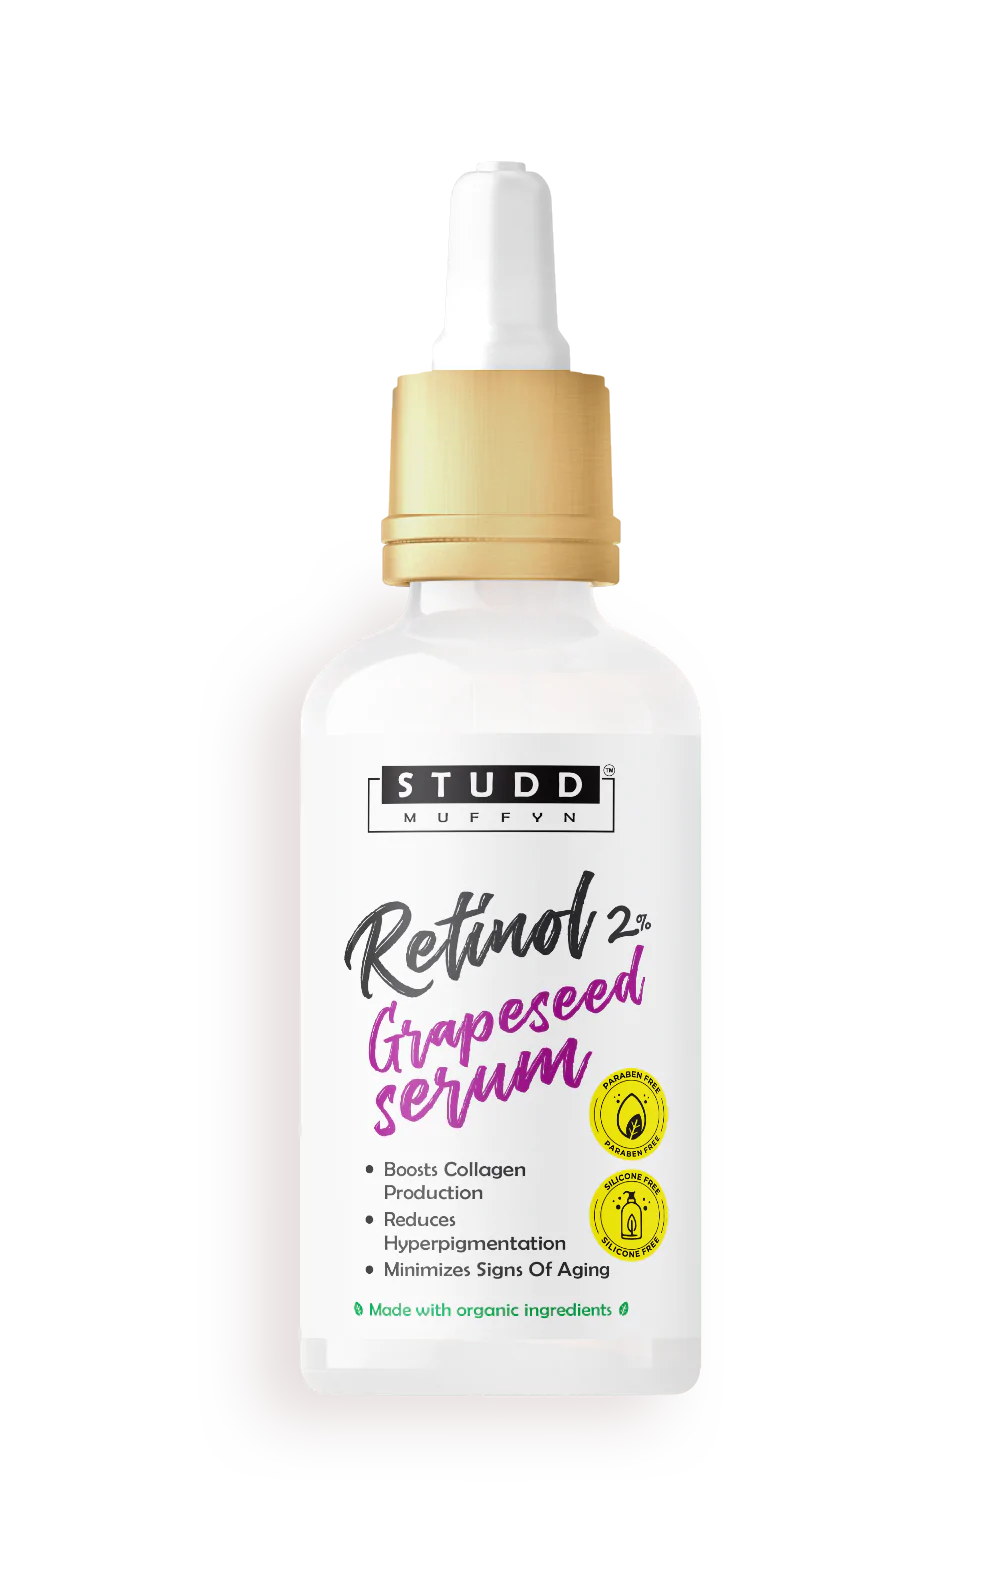 Studd Muffyn Retinol Grapeseed Serum for Men and Women- 30 ml